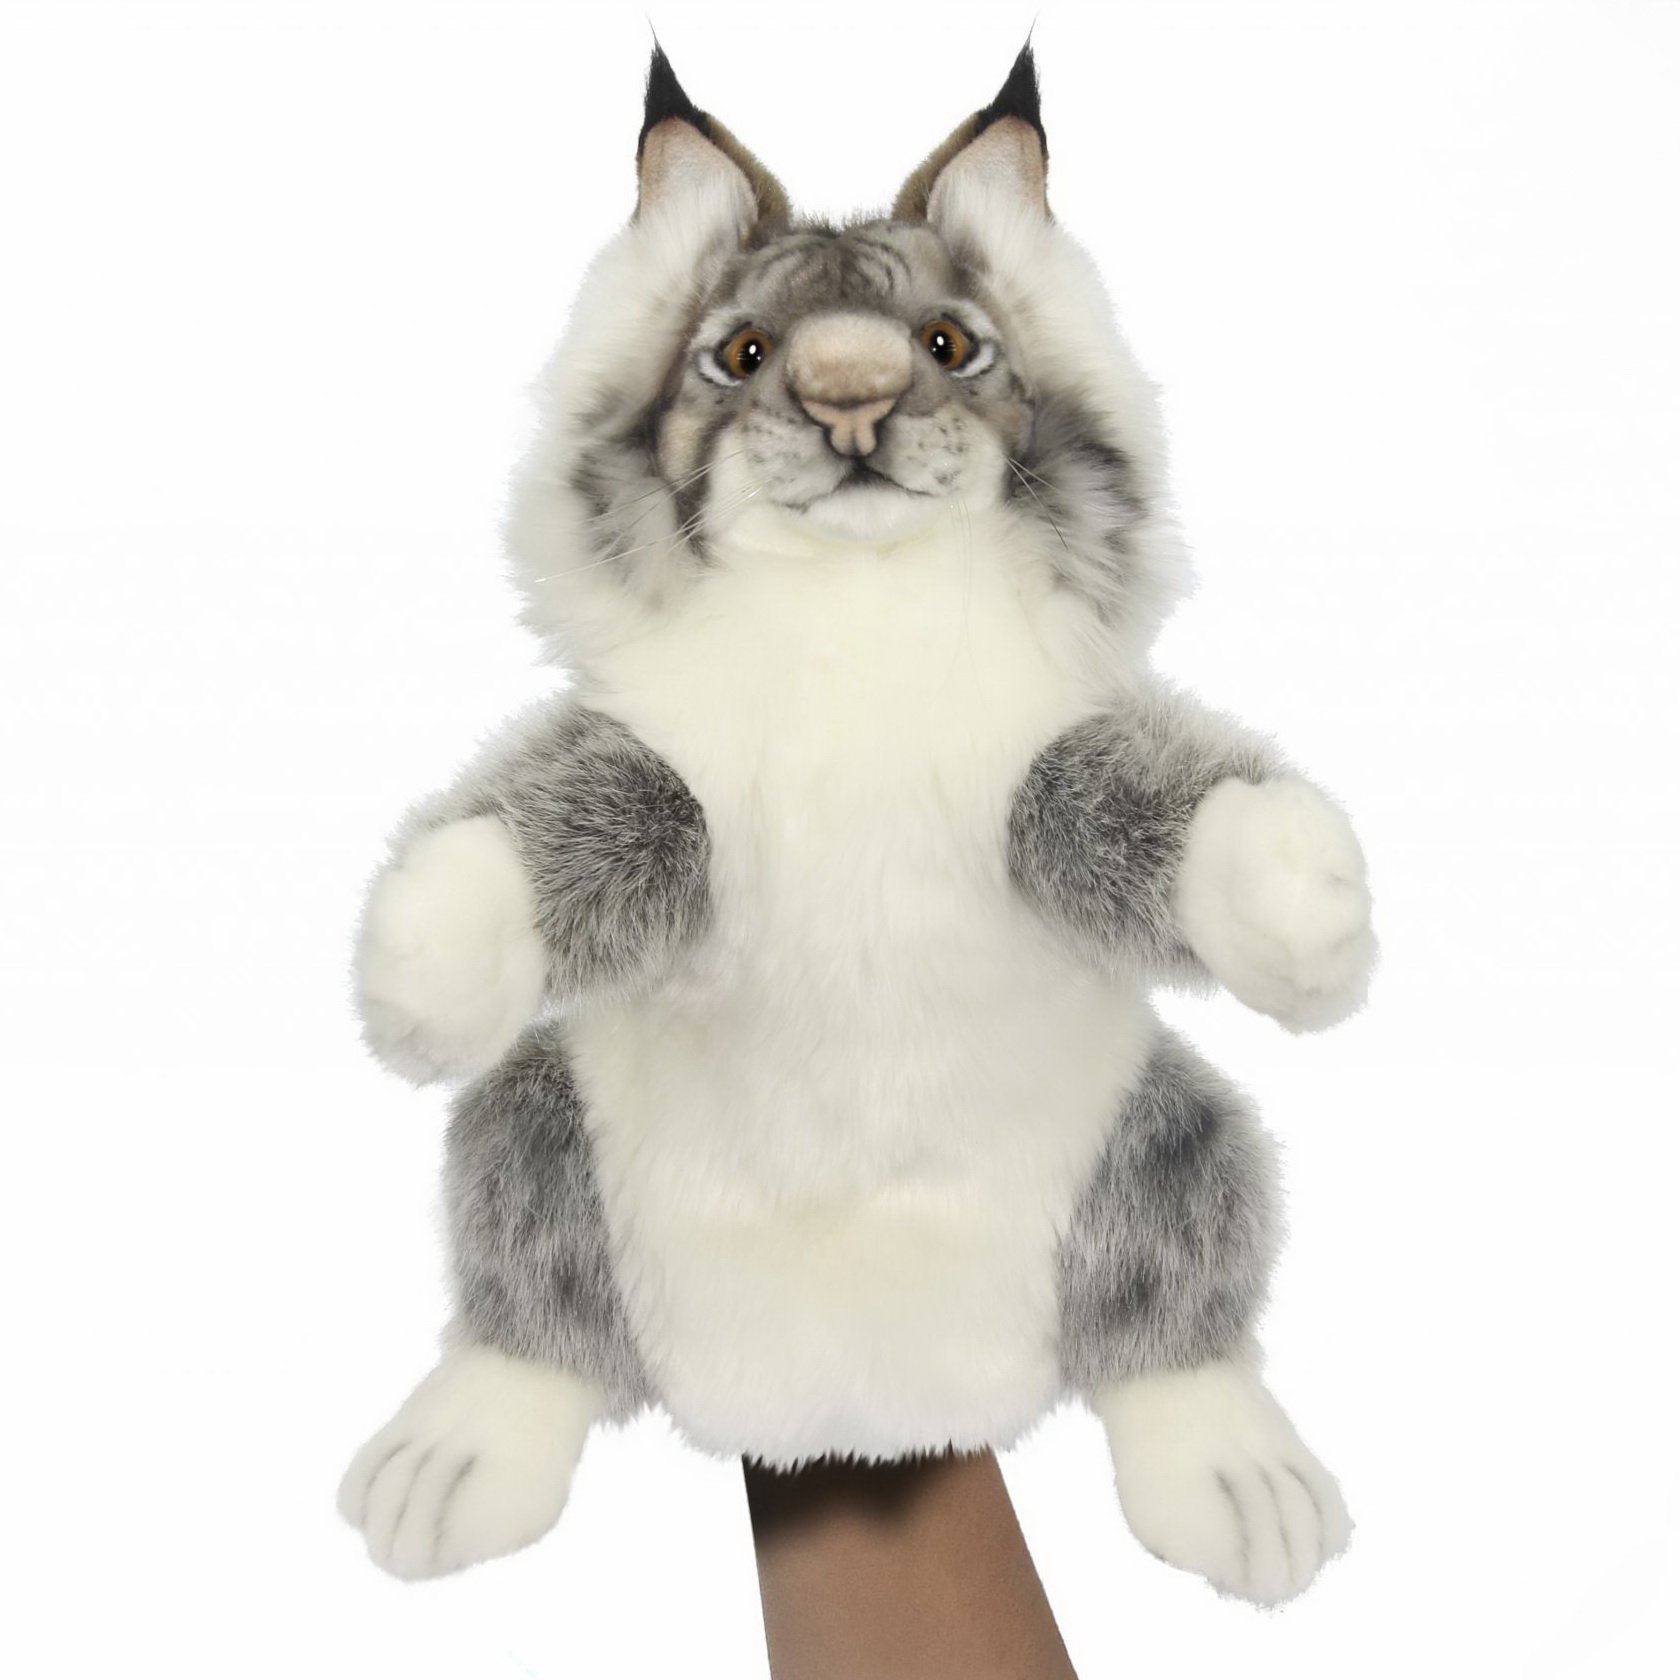 М'яка іграшка на руку Hansa Puppet Рись, 36 см, біла з сірим (7948) - фото 1